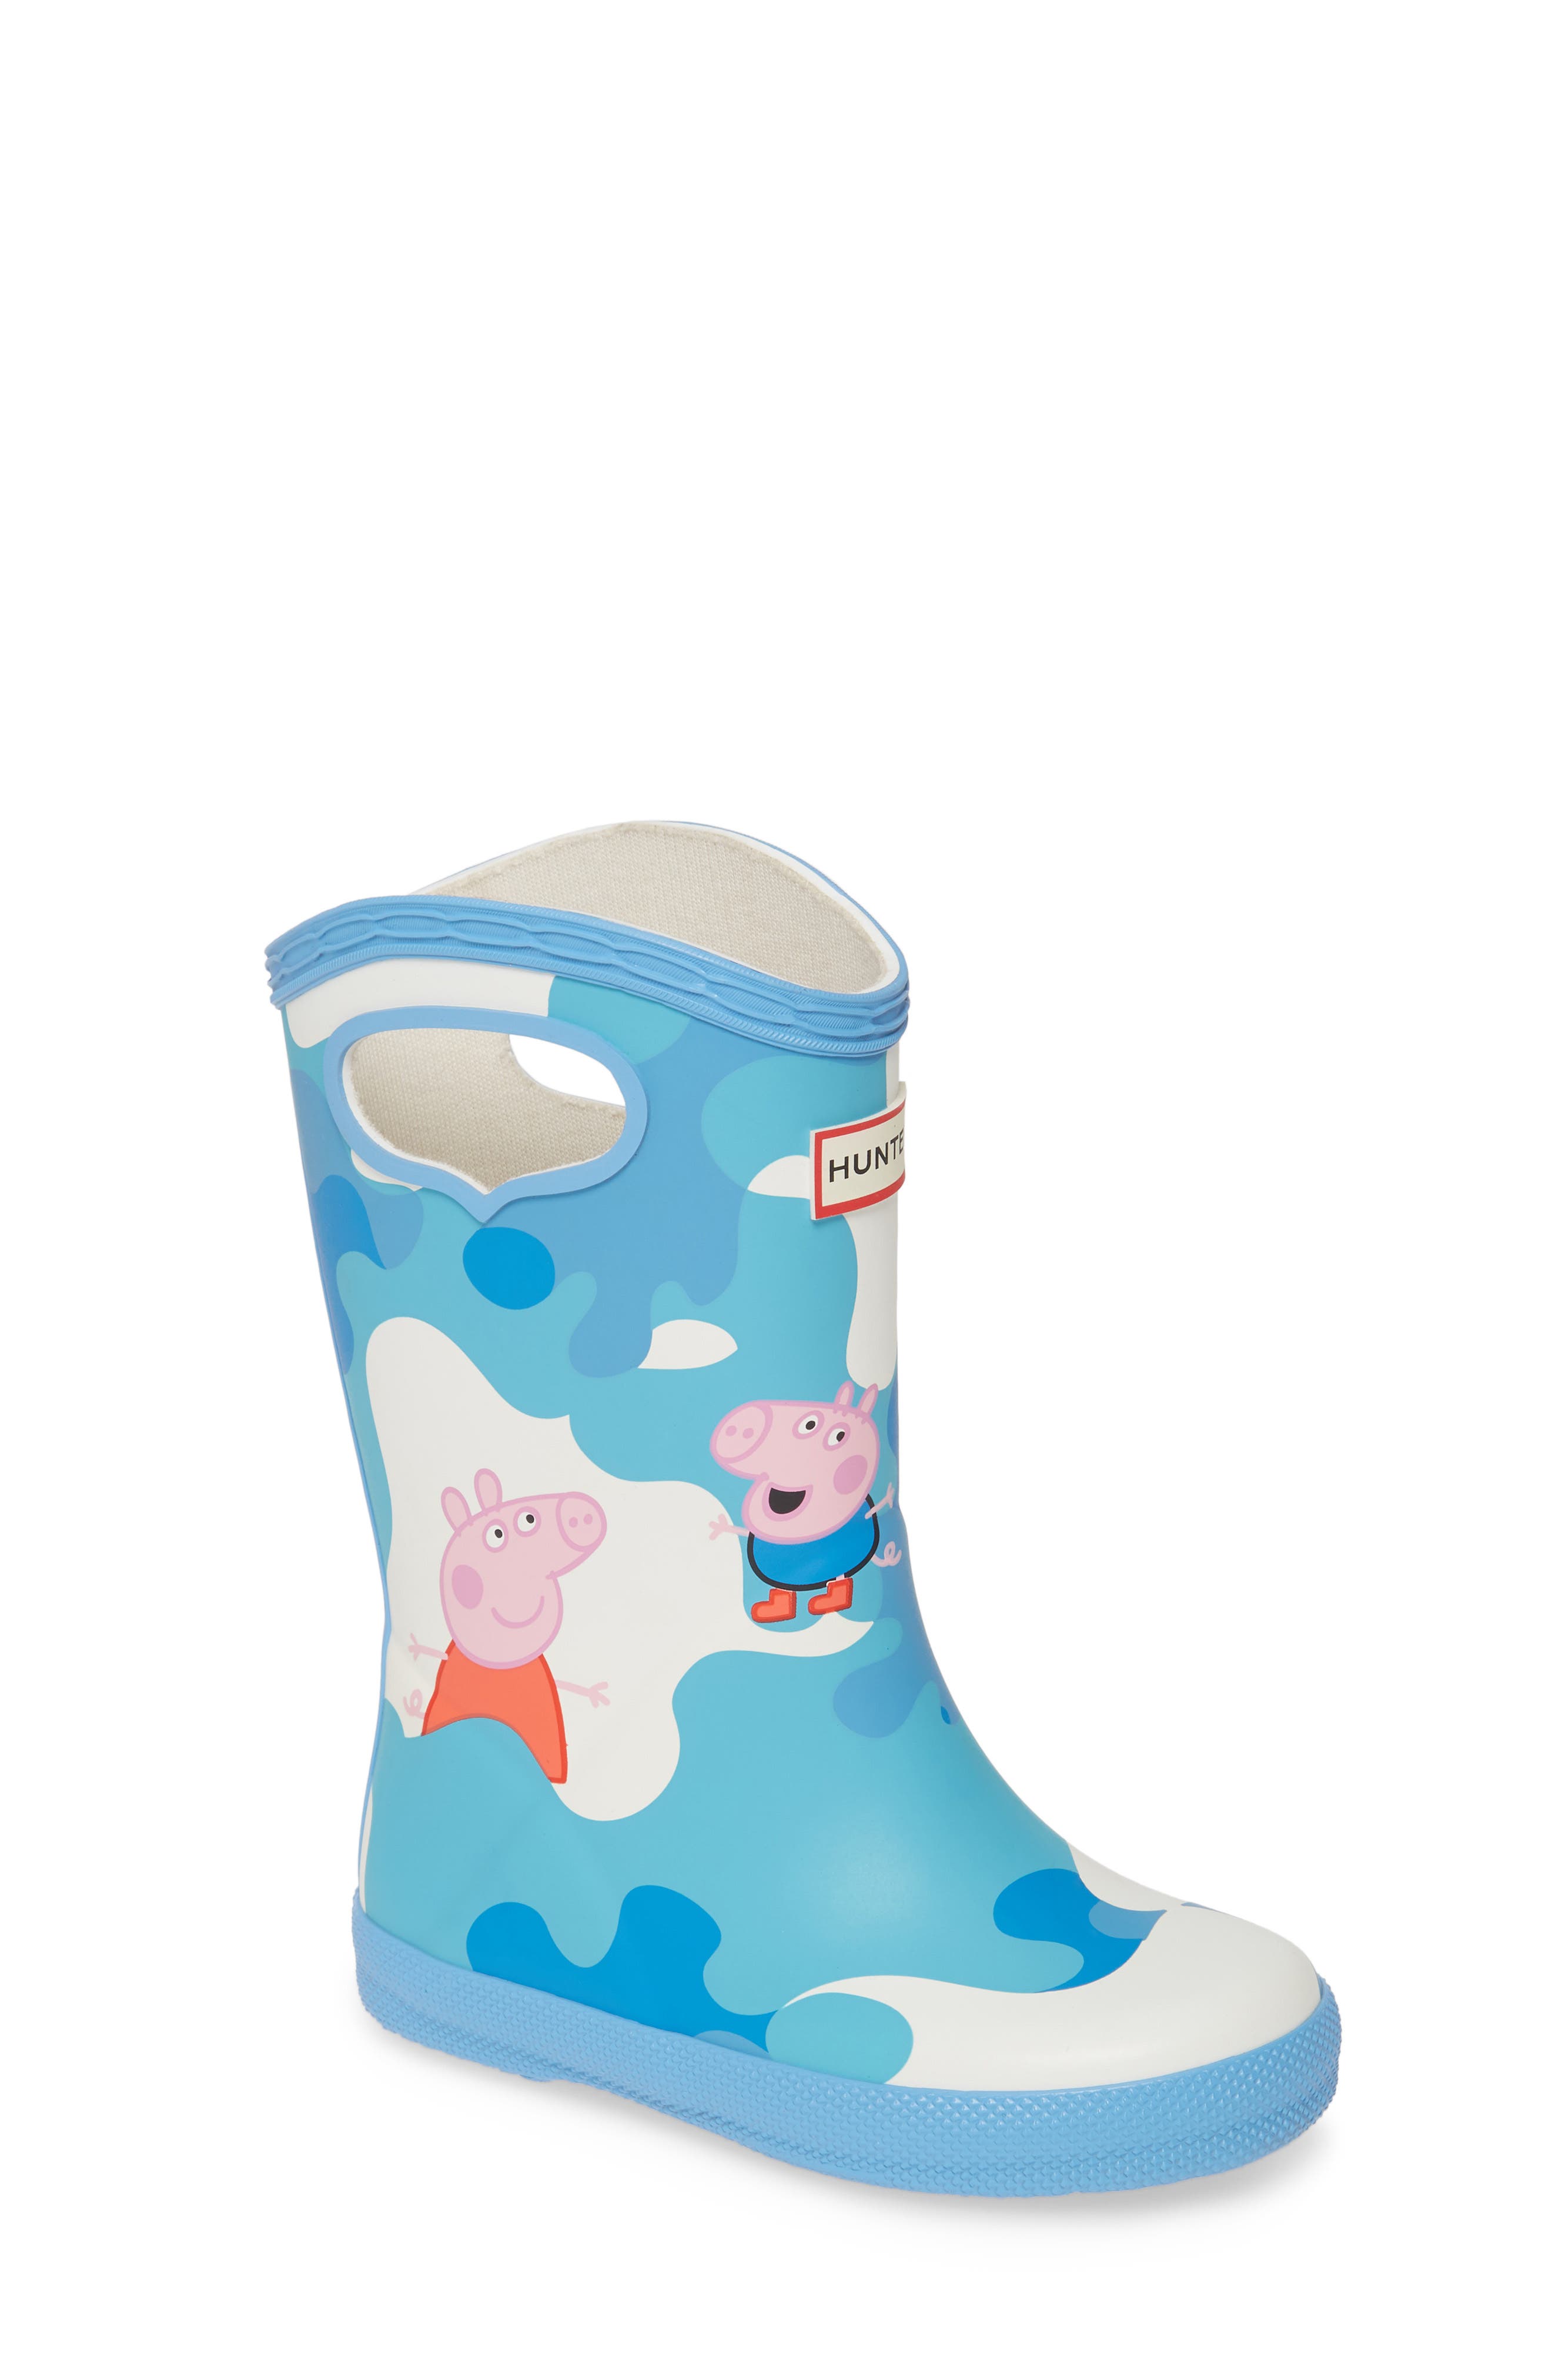 peppa pig rain boots size 8